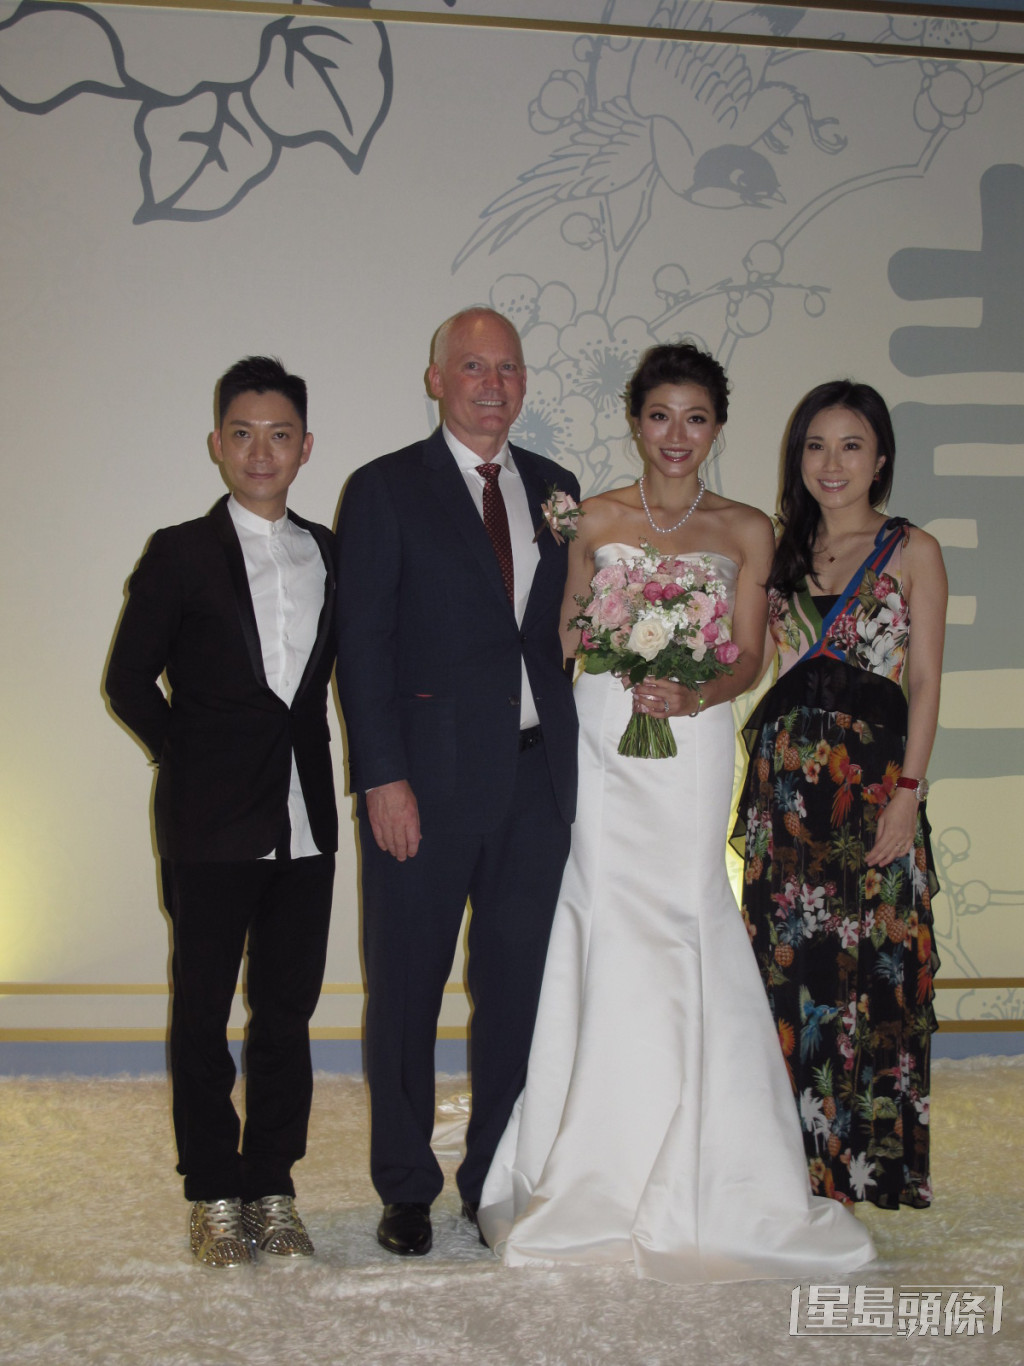 李姿敏2017年嫁给澳洲籍练马师贺贤。